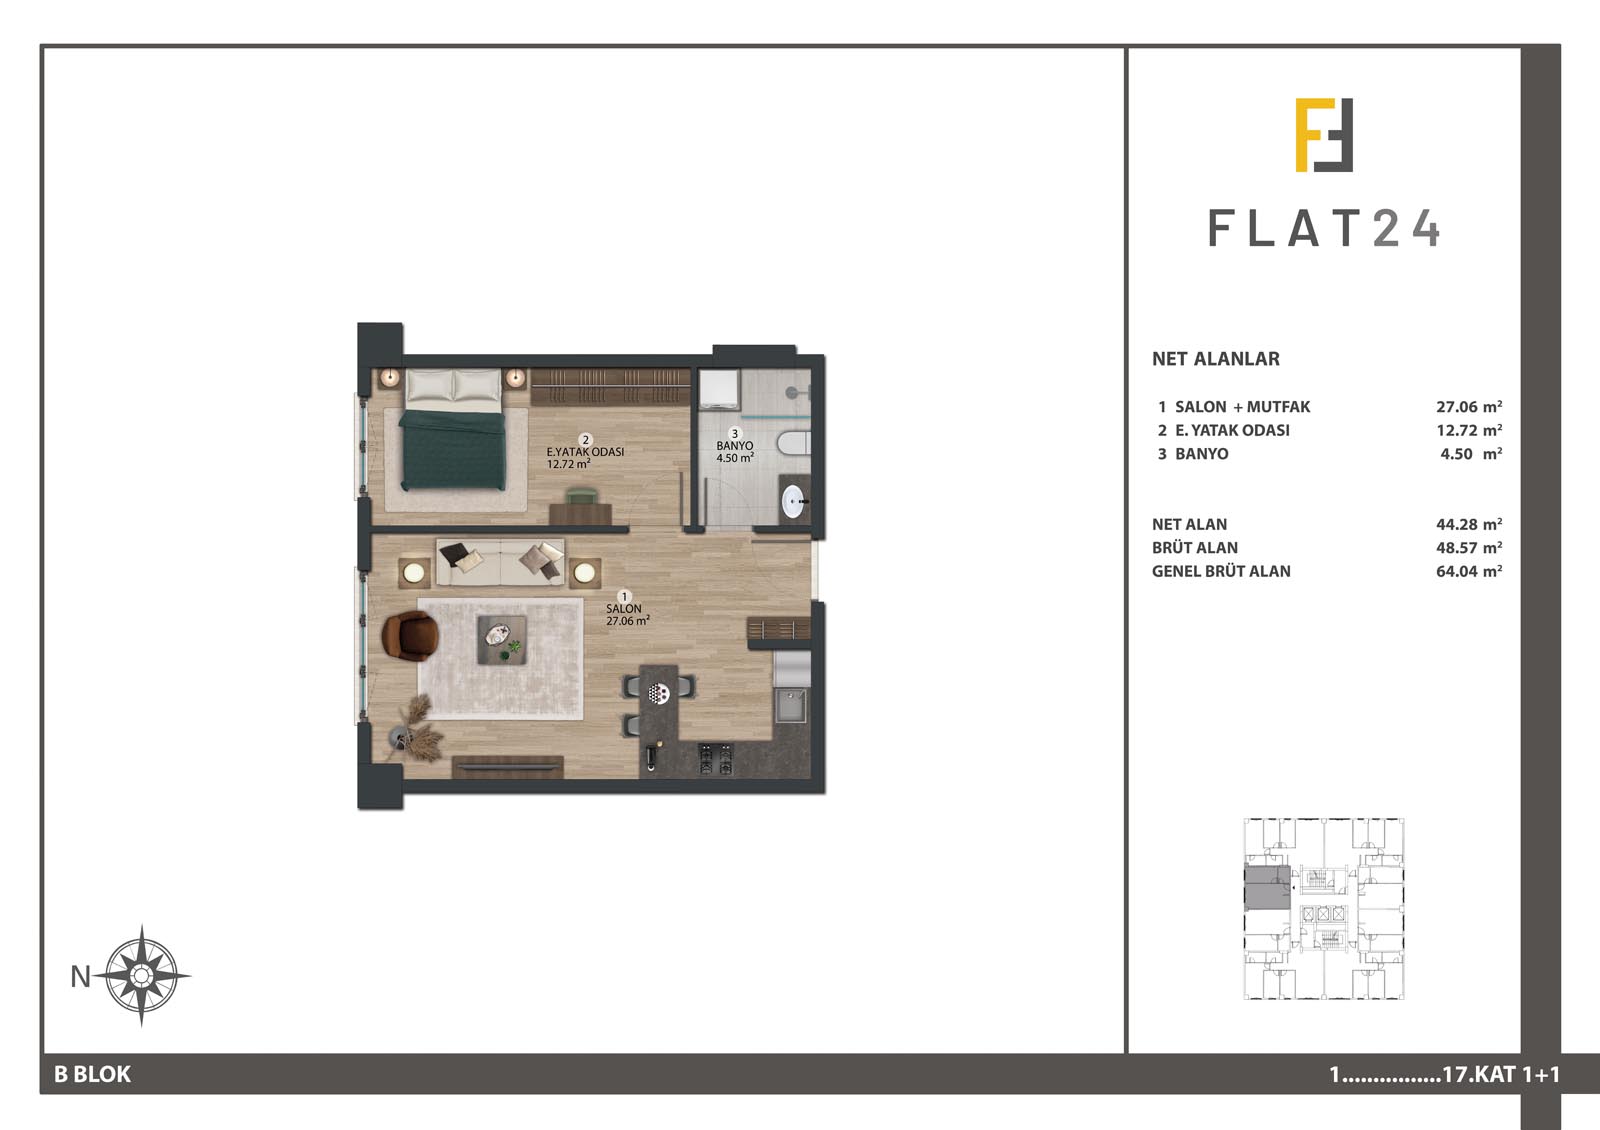 1 Bedroom Flat in Basın Ekspress Flat 24